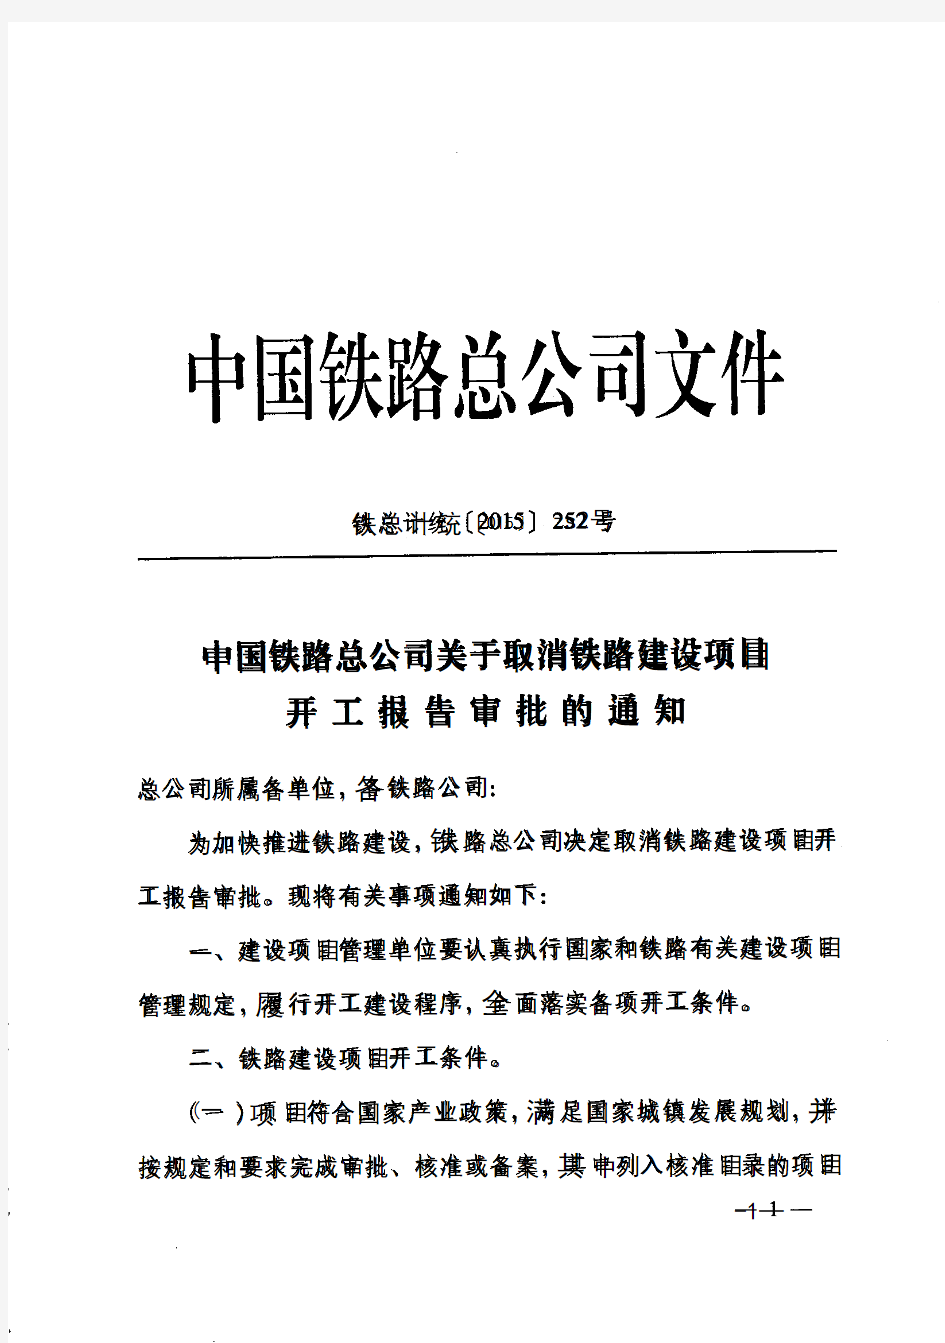 中国铁路总公司关于取消铁路建设项目开工报告审批的通知